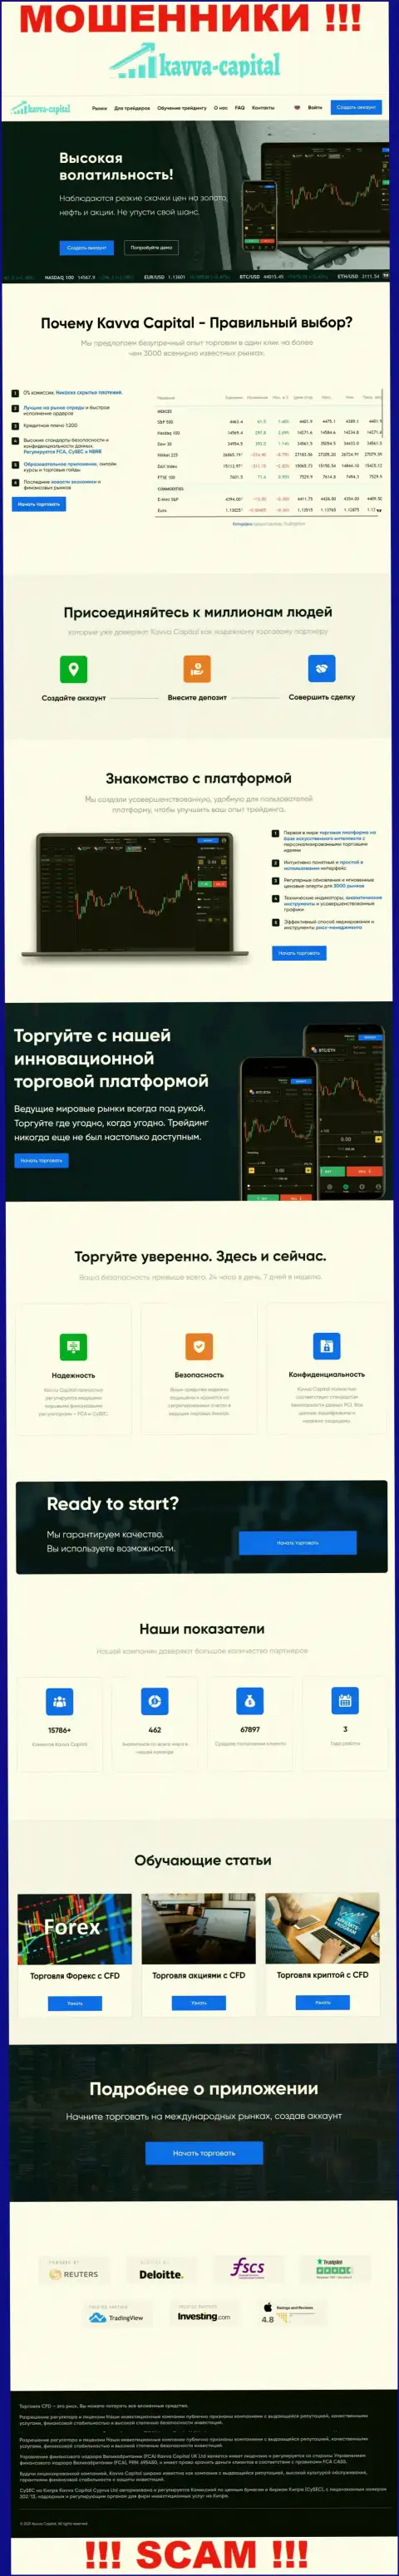 Официальный портал мошенников Kavva Capital, переполненный сведениями для наивных людей